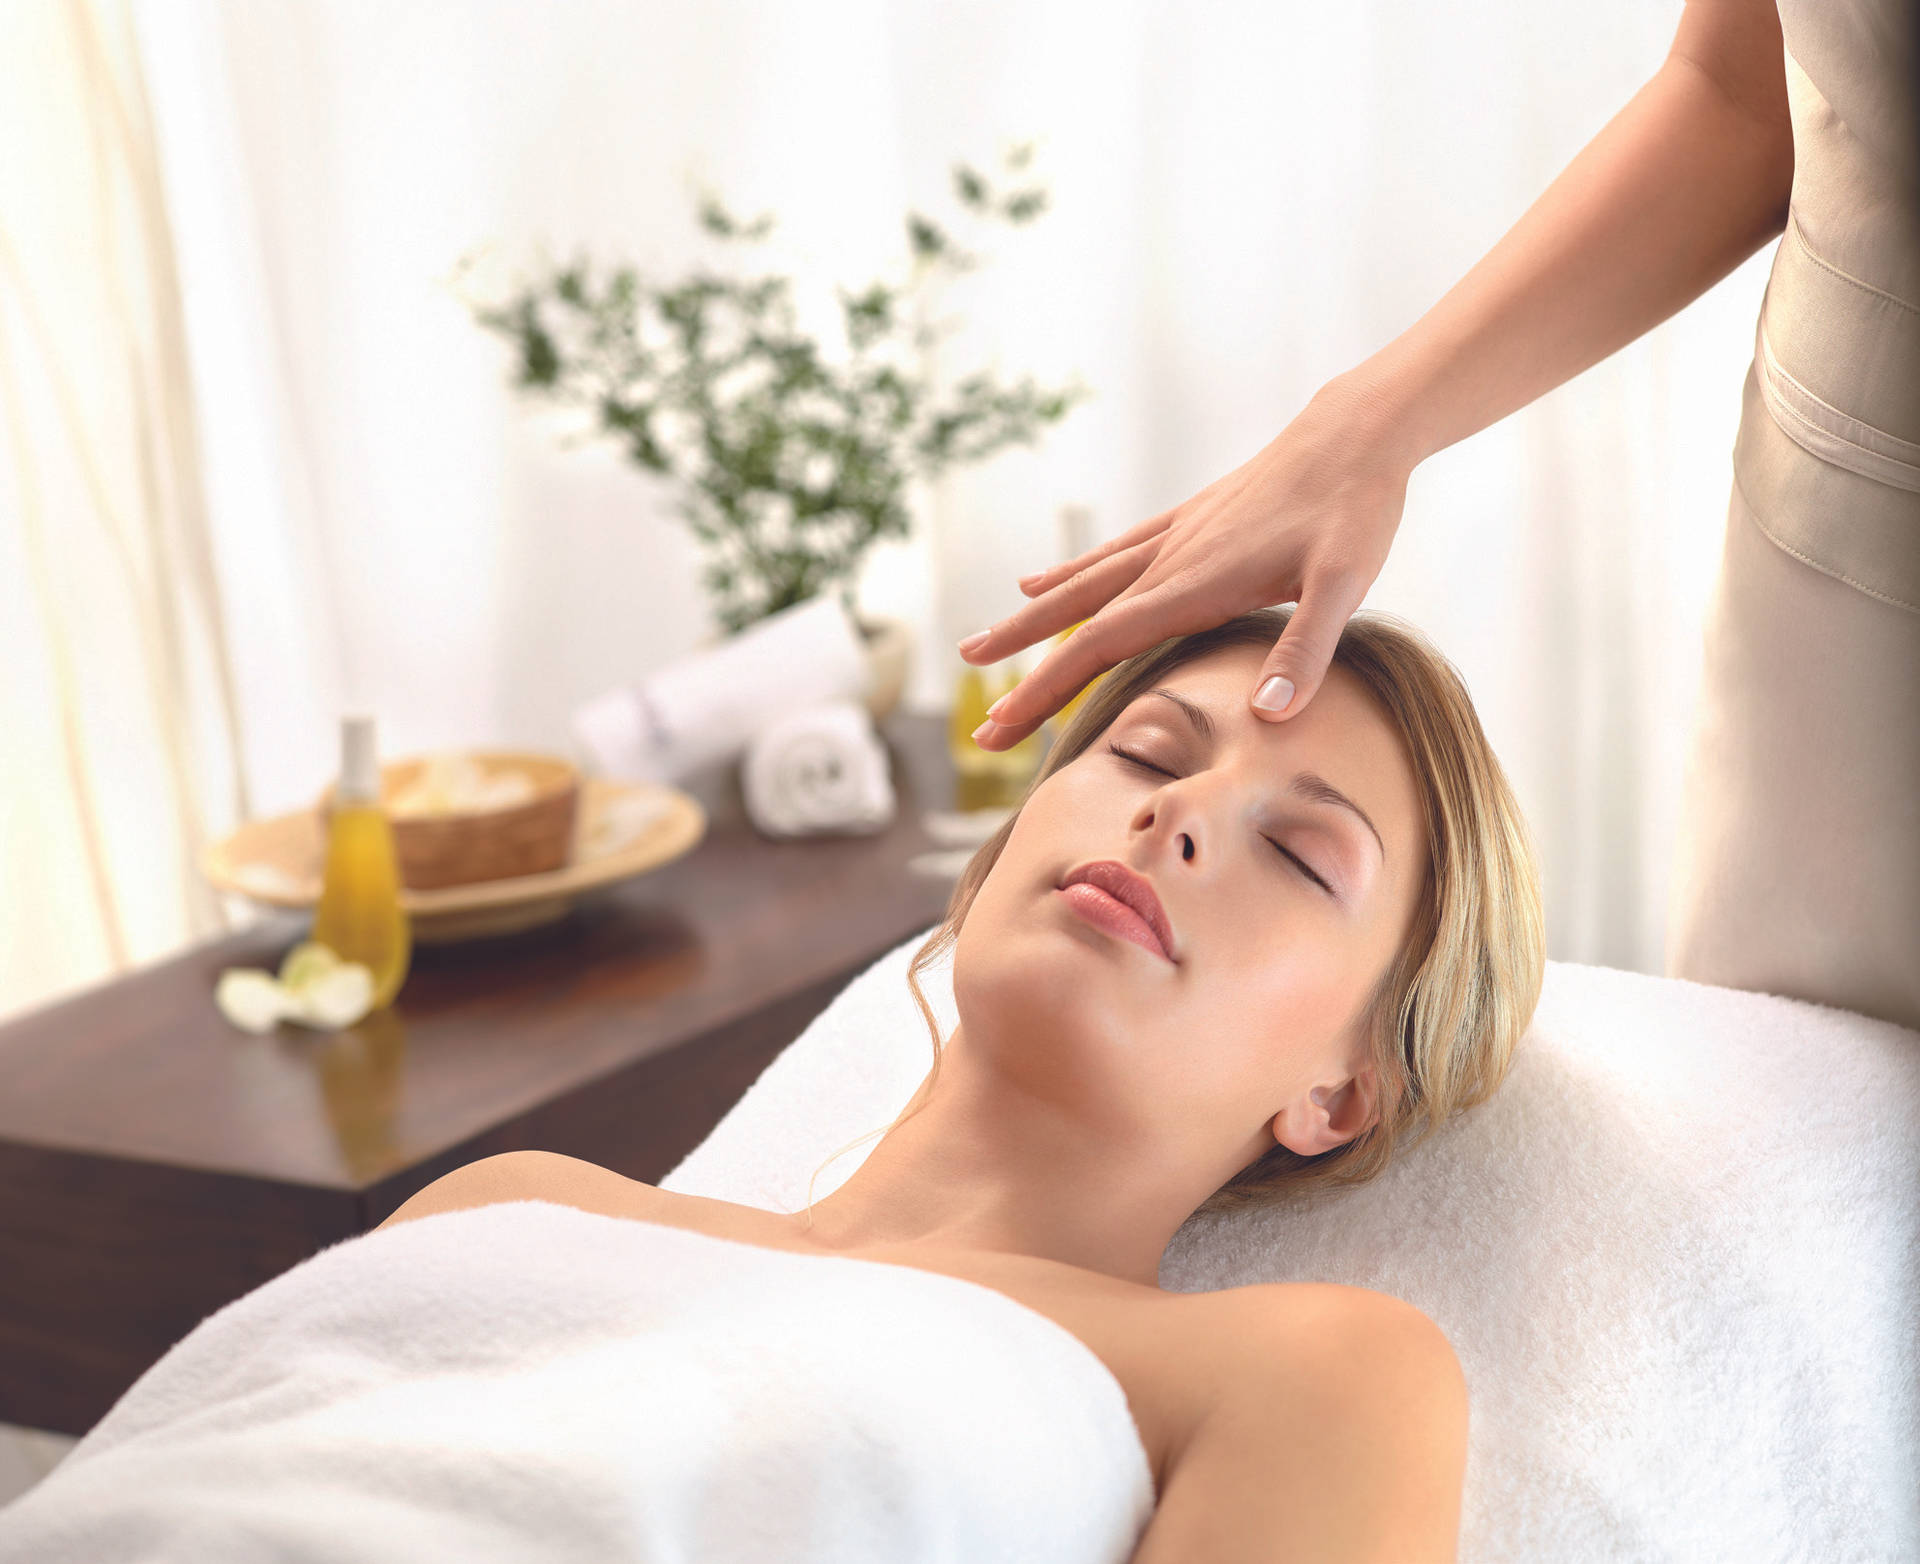 Massage In A Beauty Salon Wallpaper